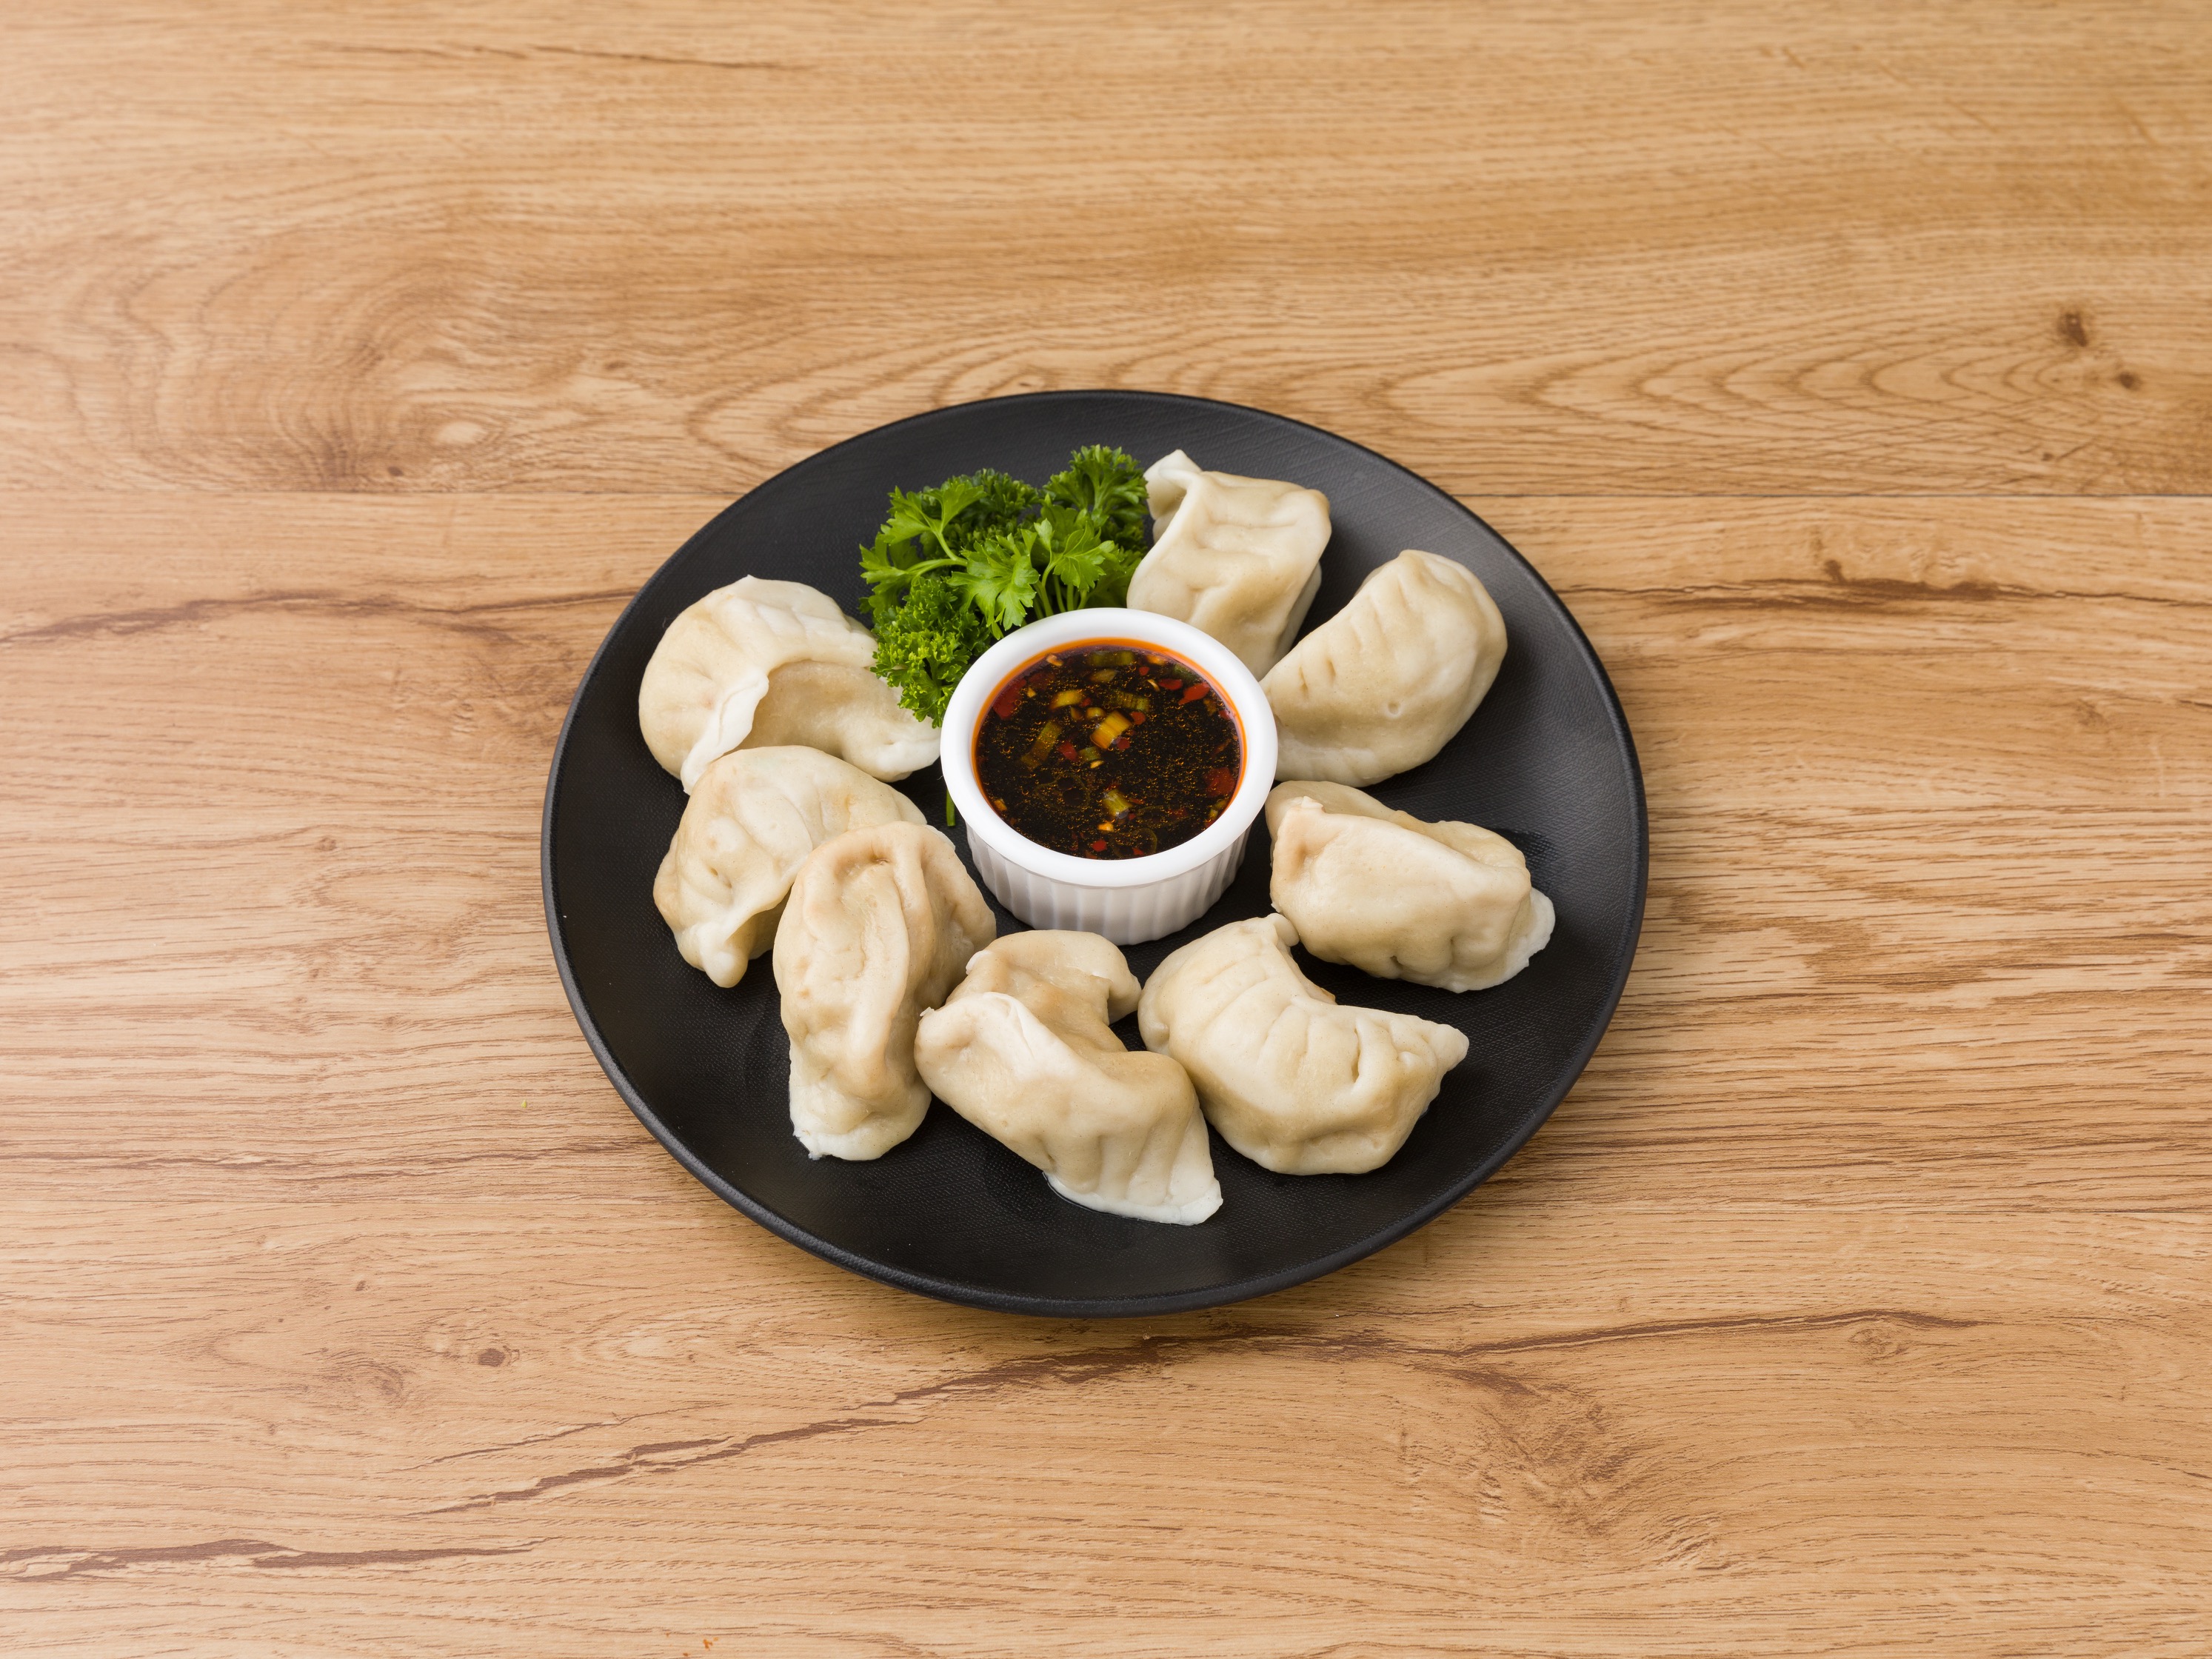 Order 7. Steamed Dumplings food online from China Wok store, Westville on bringmethat.com